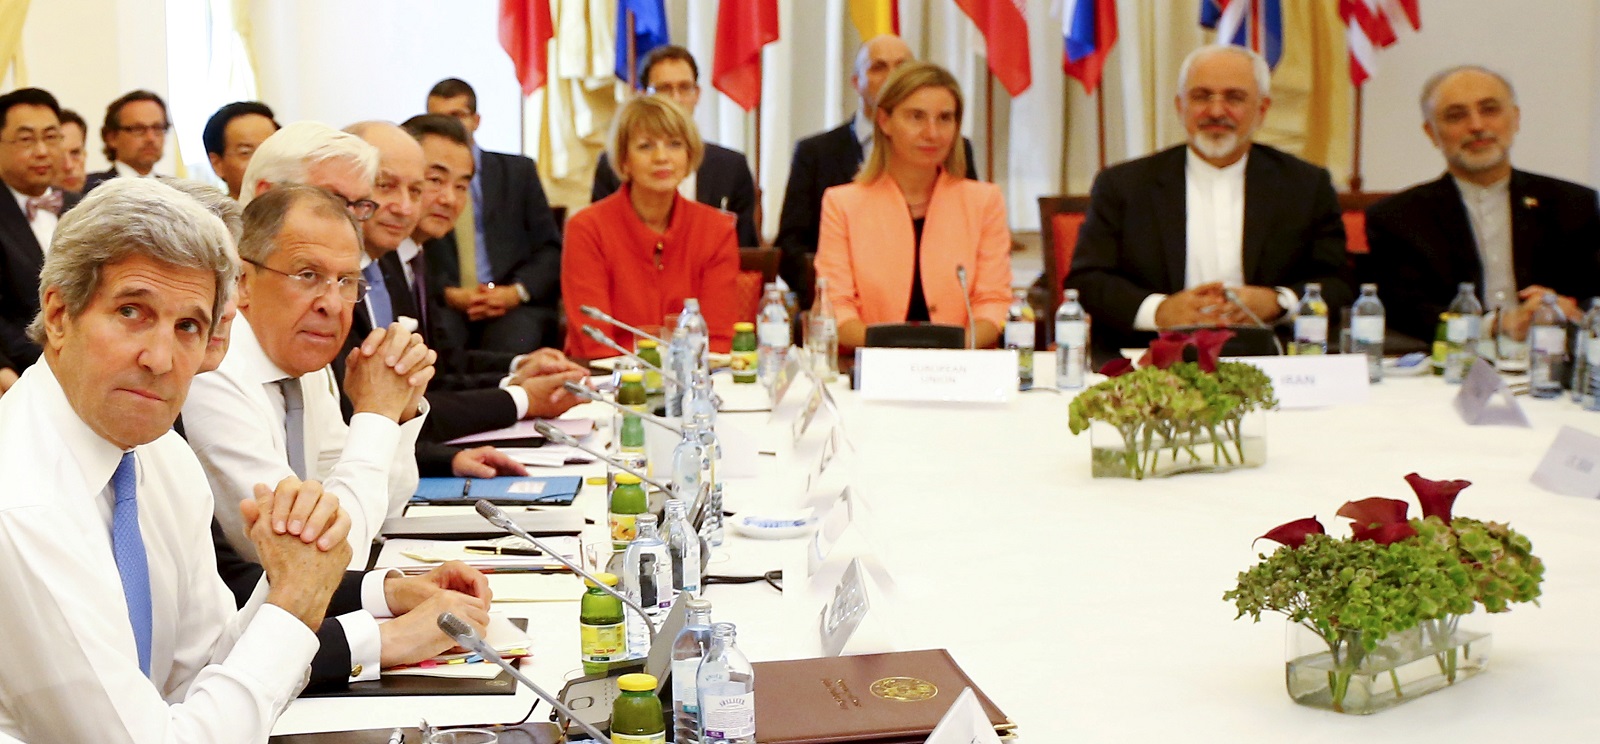 Iran nuclear talks in Vienna